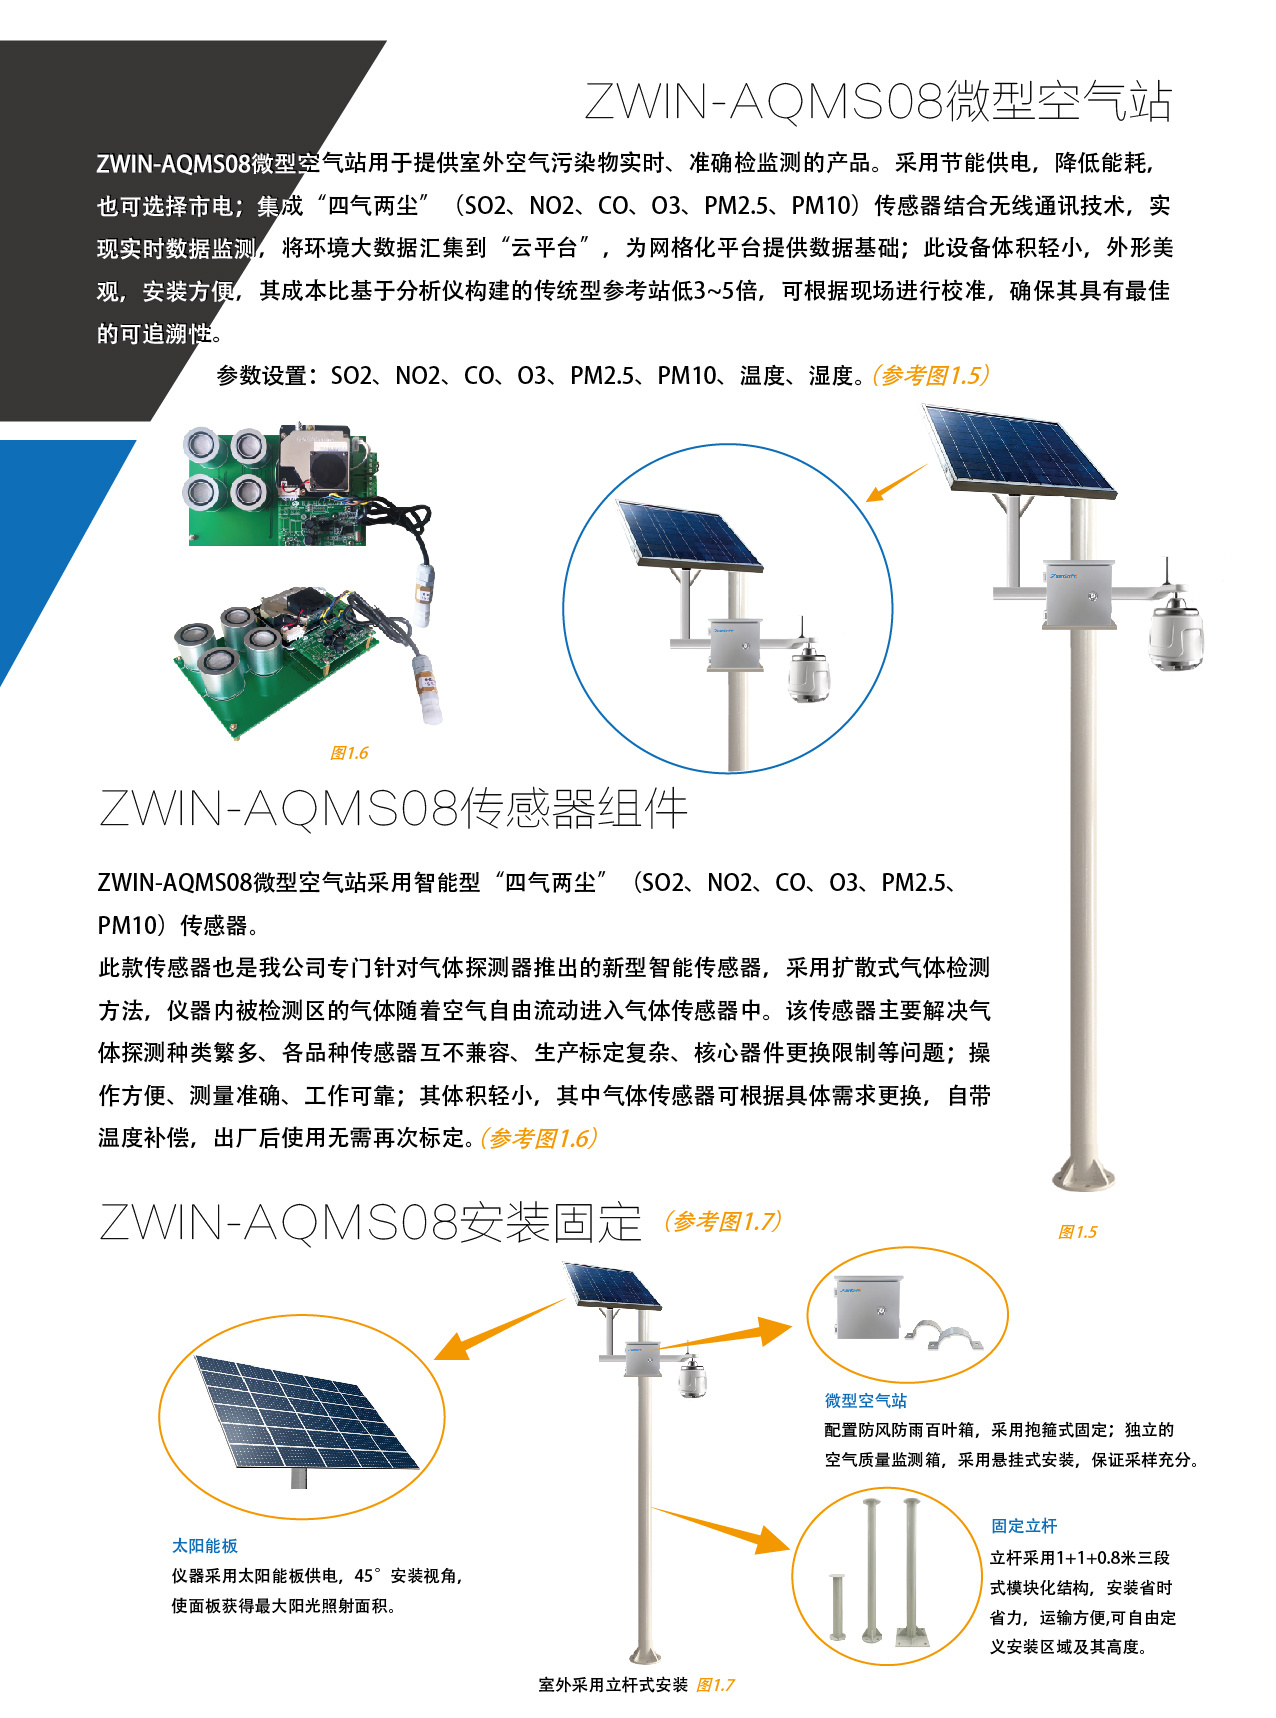 智易时代微型空气质量监测仪ZWIN-AQMS08